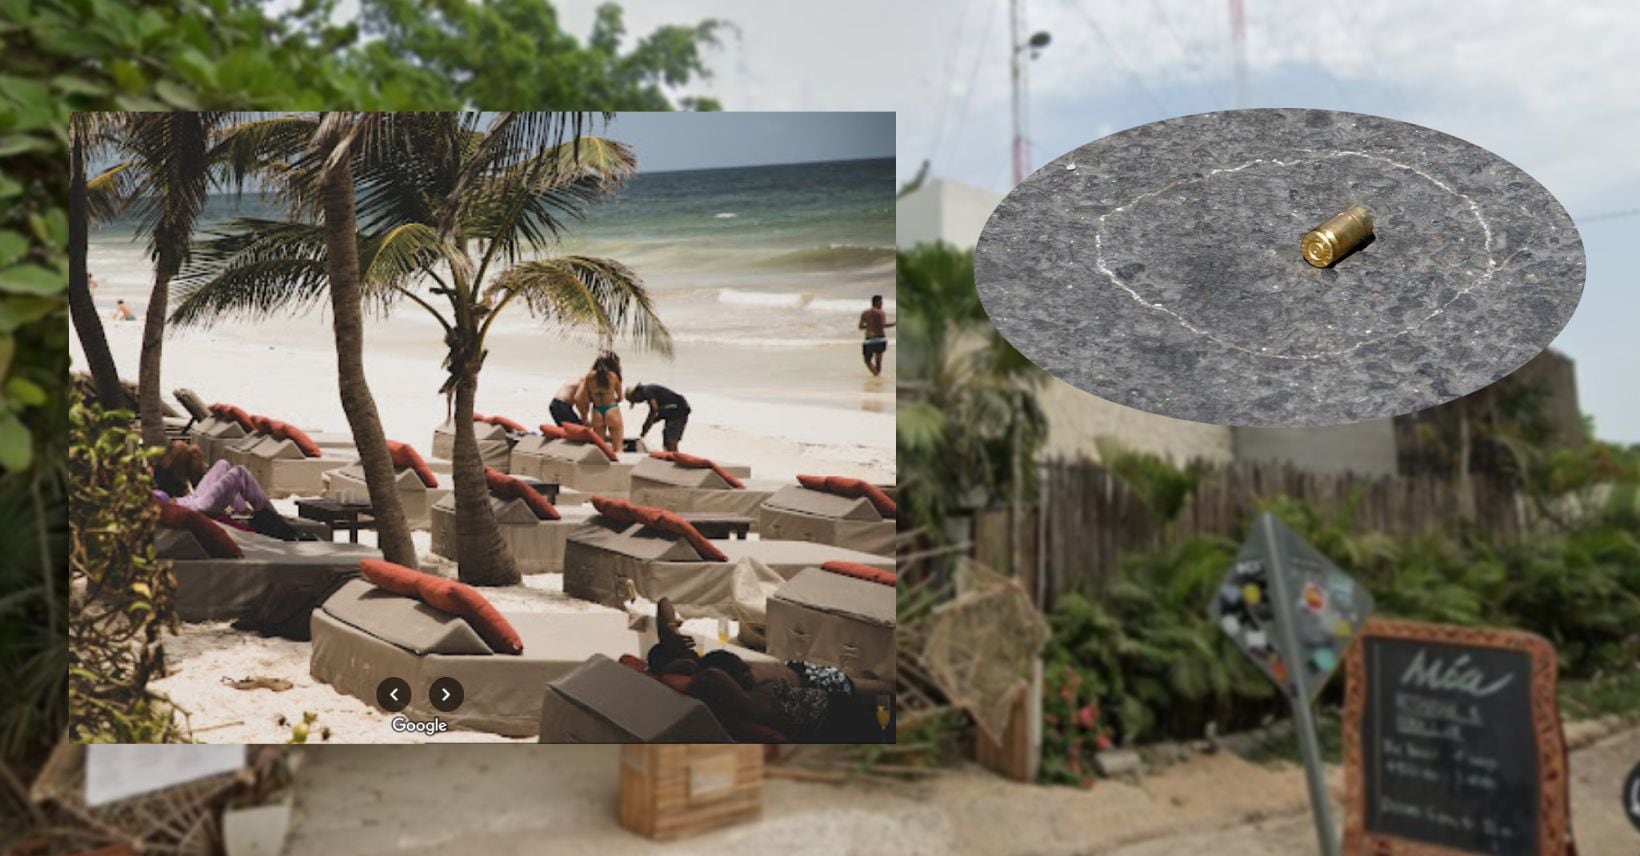 asesinan a dos turistas extranjeros en playas de tulum: hombre disfrutaba en bar y mujer en la playa